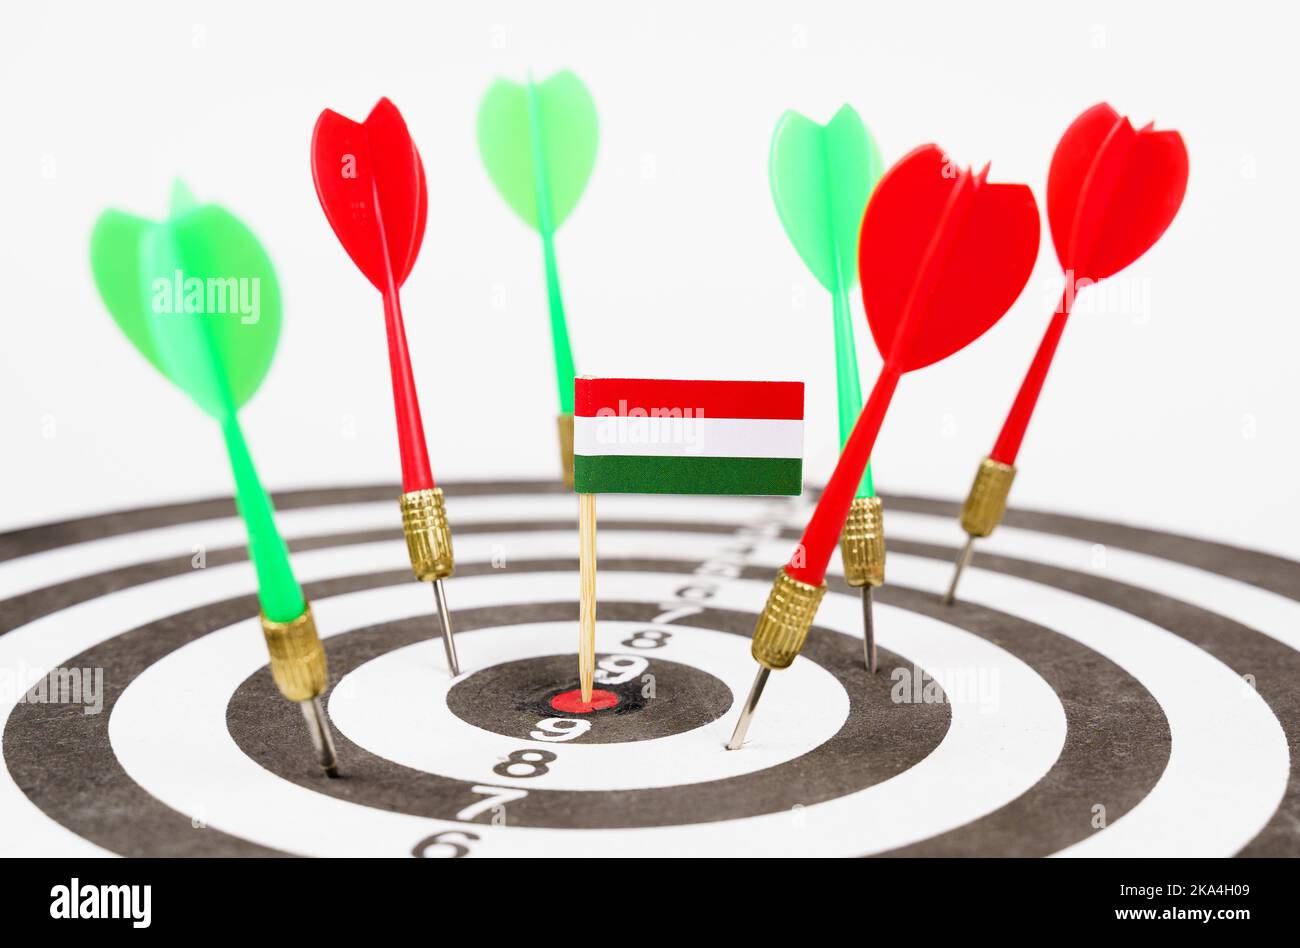 Freccette con la bandiera dell'Ungheria nel bullseye, accanto alle freccette rosse e verdi. Concetto di successo e leadership. Foto Stock